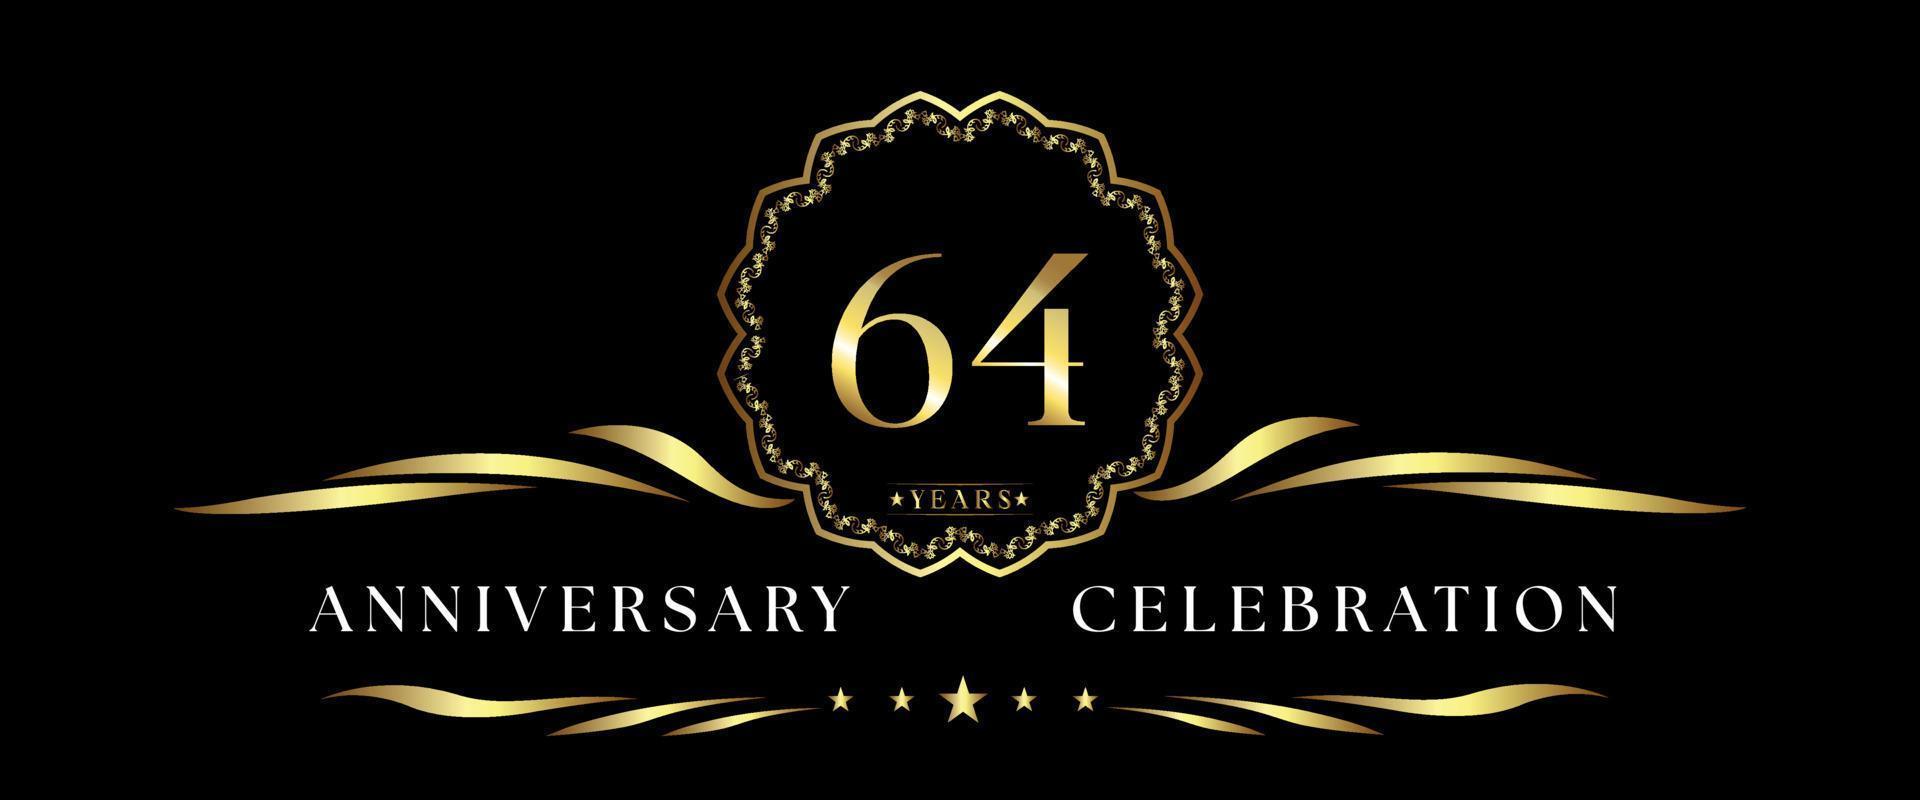 Celebrazione dell'anniversario di 64 anni con cornice decorativa dorata isolata su sfondo nero. disegno vettoriale per biglietto di auguri, festa di compleanno, matrimonio, festa evento, cerimonia. Logo dell'anniversario di 64 anni.